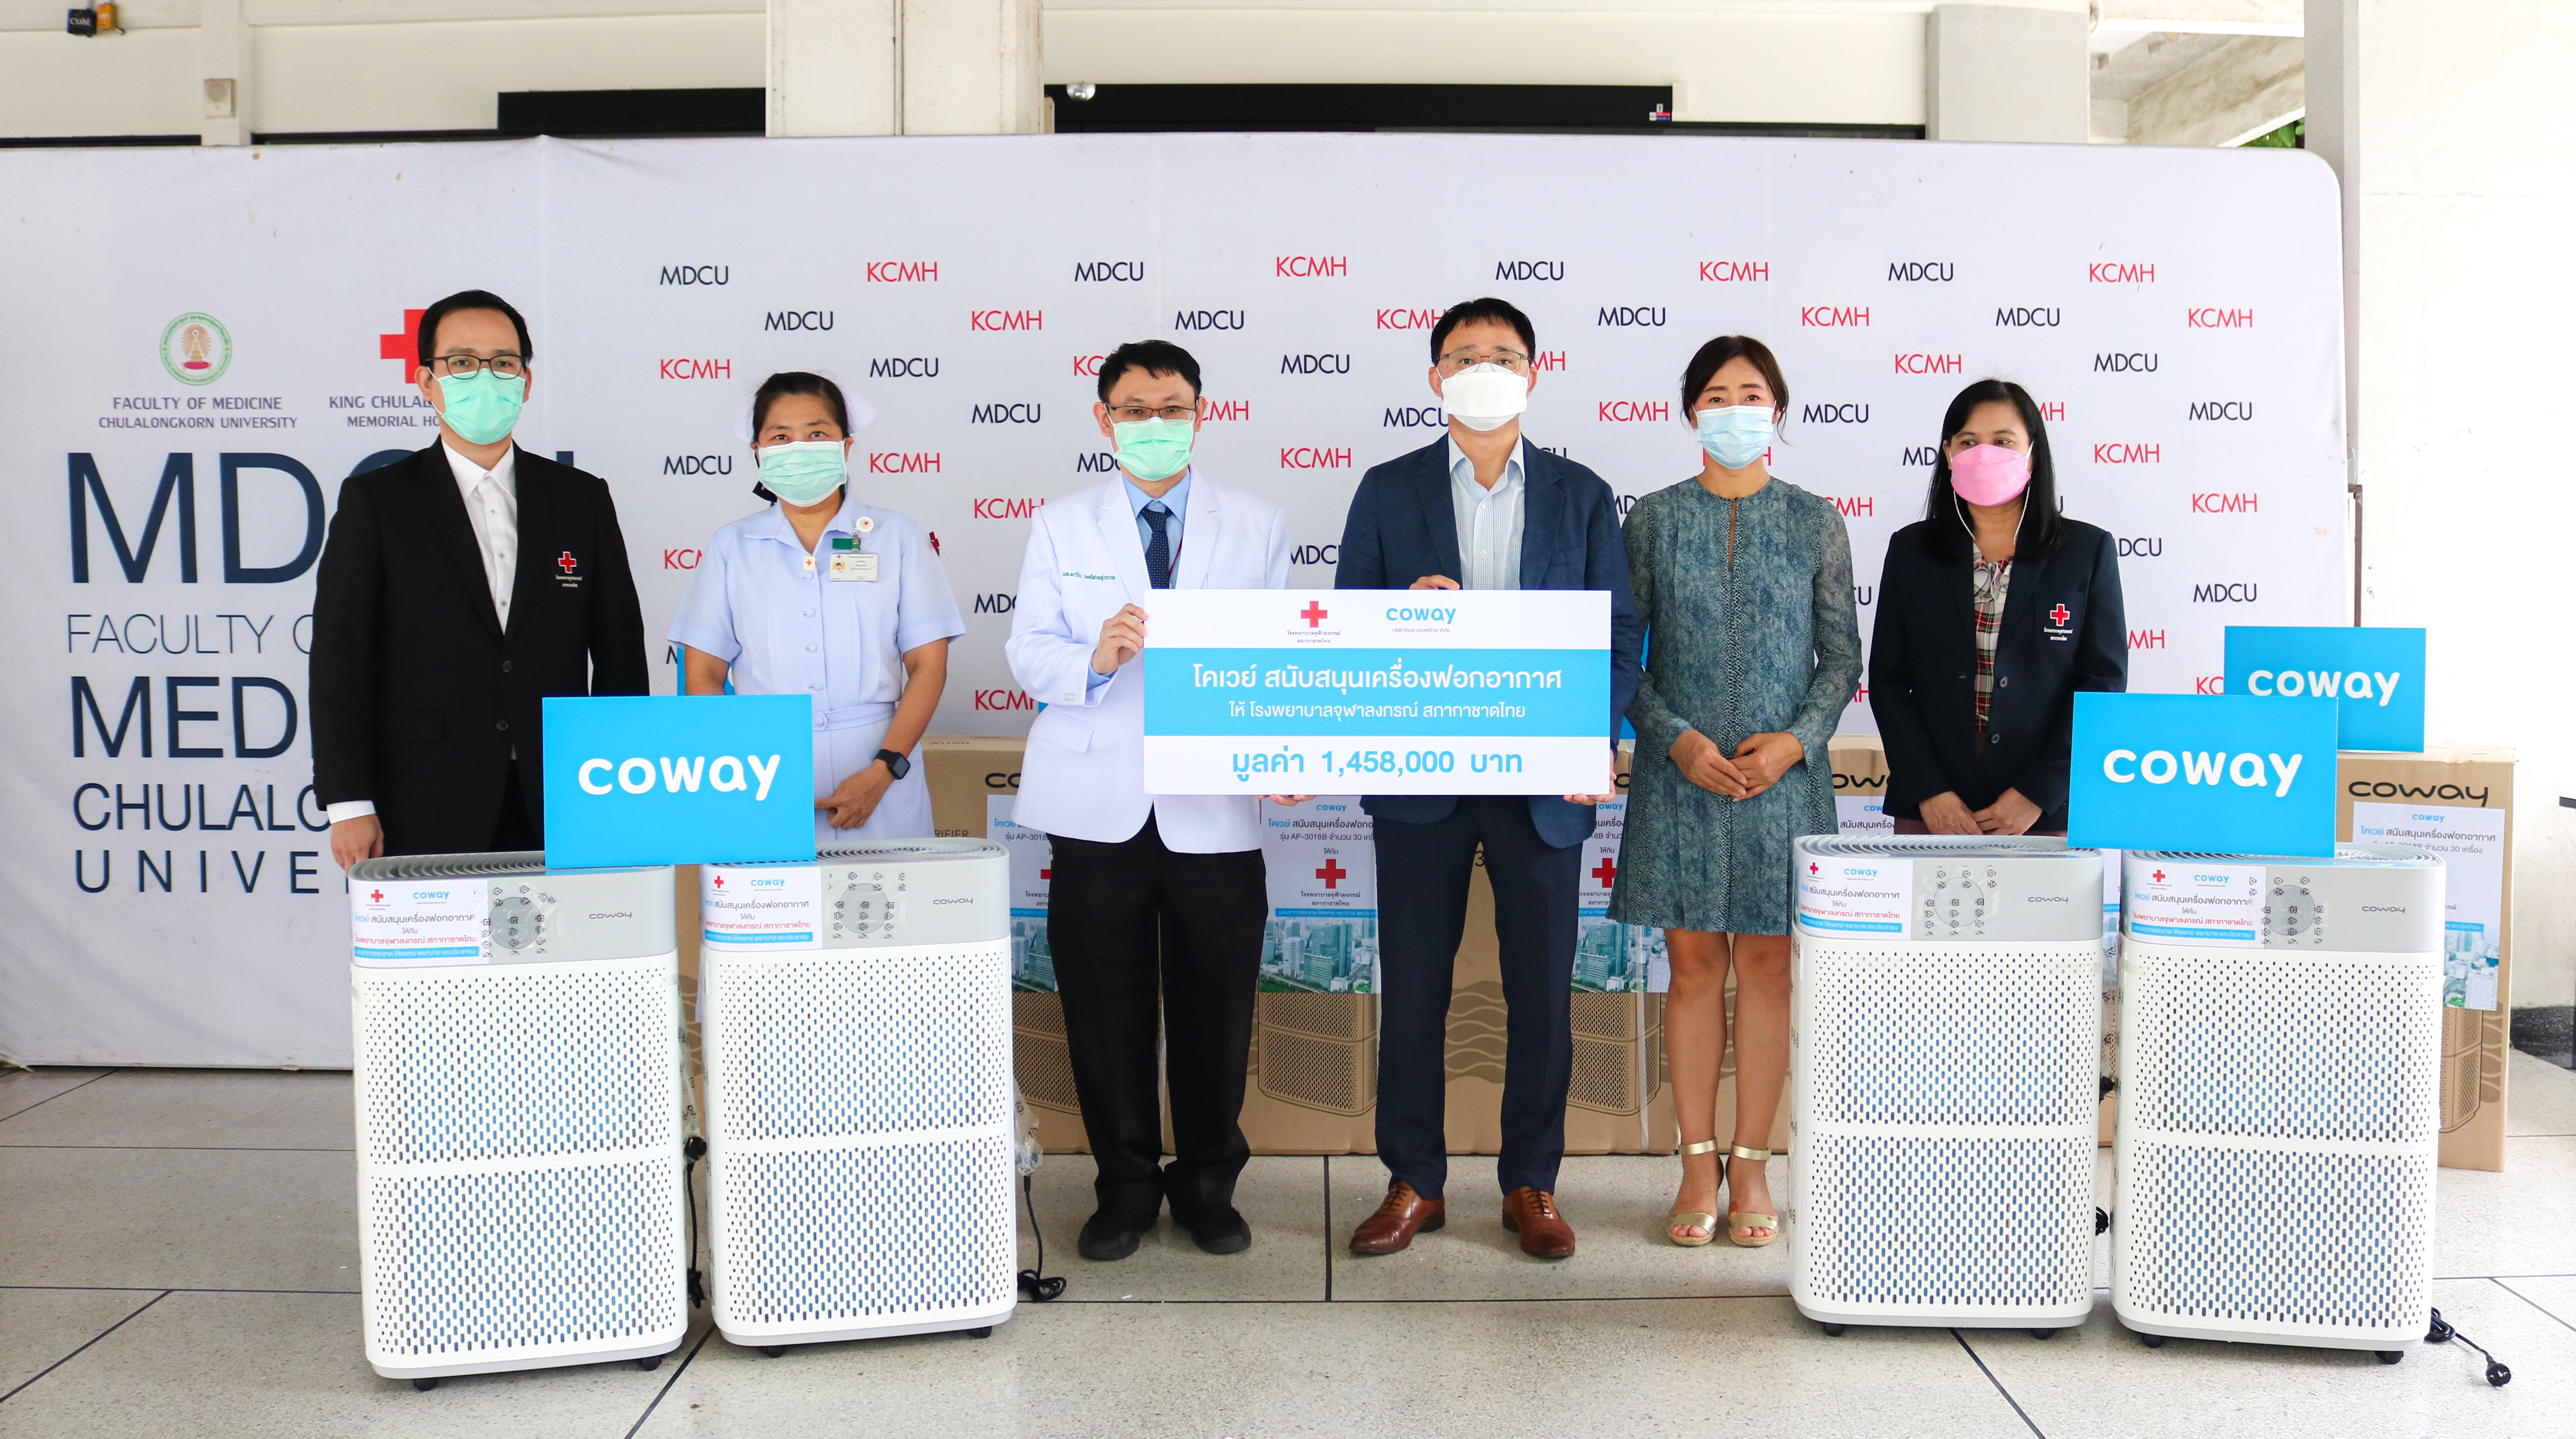 COWAY ร่วมส่งกำลังใจให้บุคลากรทางการแพทย์สู้ภัย Covid-19  มอบเครื่องฟอกอากาศมูลค่า 1.45 ล้านบาทแด่โรงพยาบาลจุฬาลงกรณ์ สภากาชาดไทย